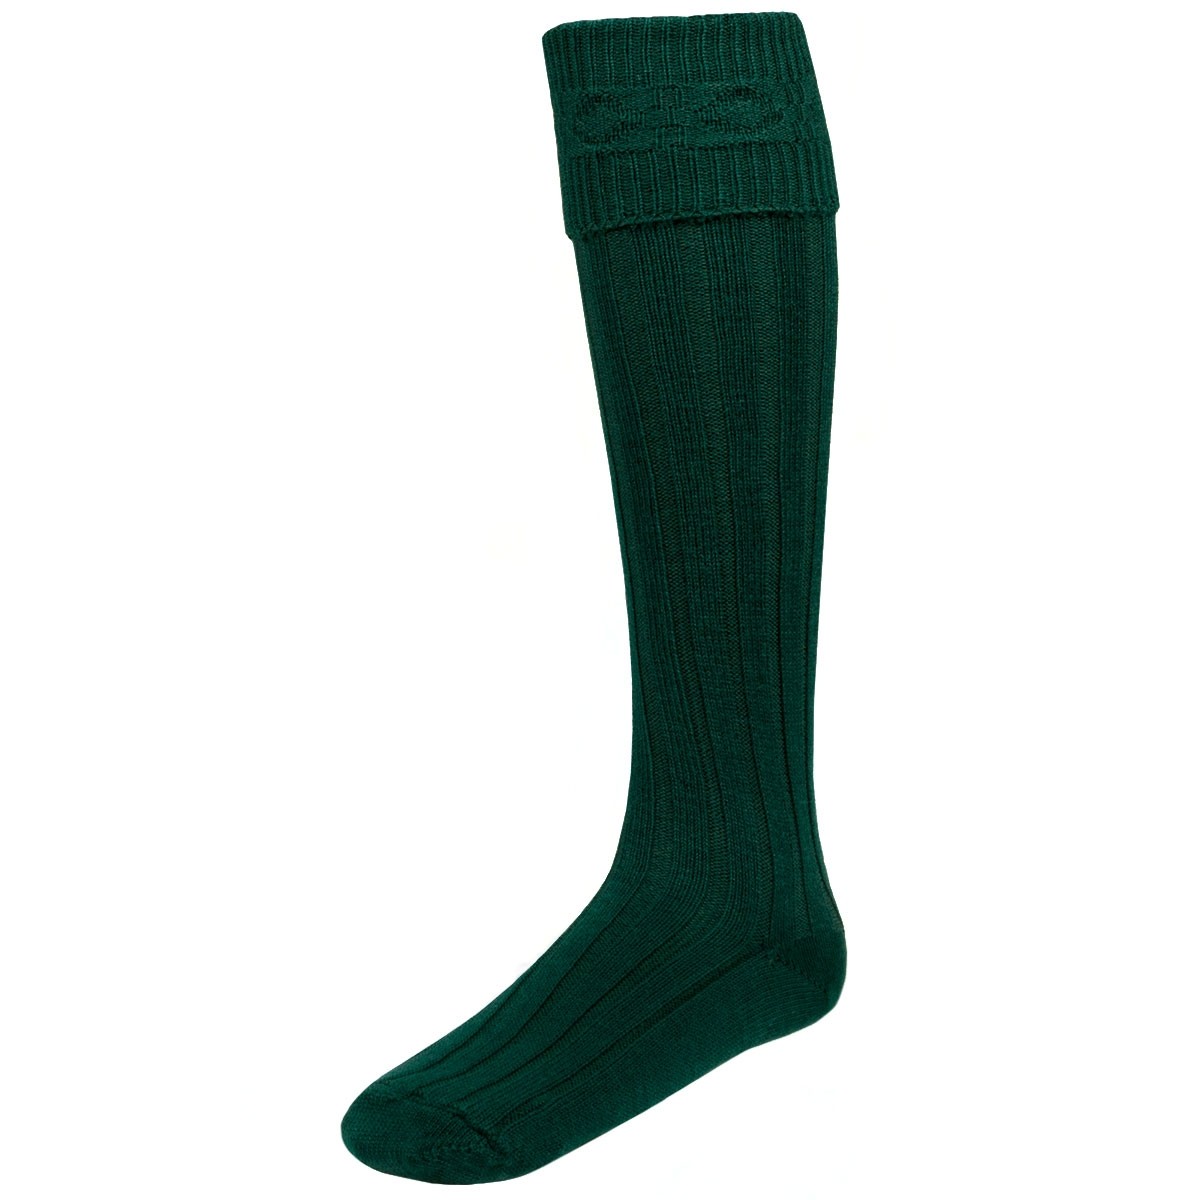 green kilt socks